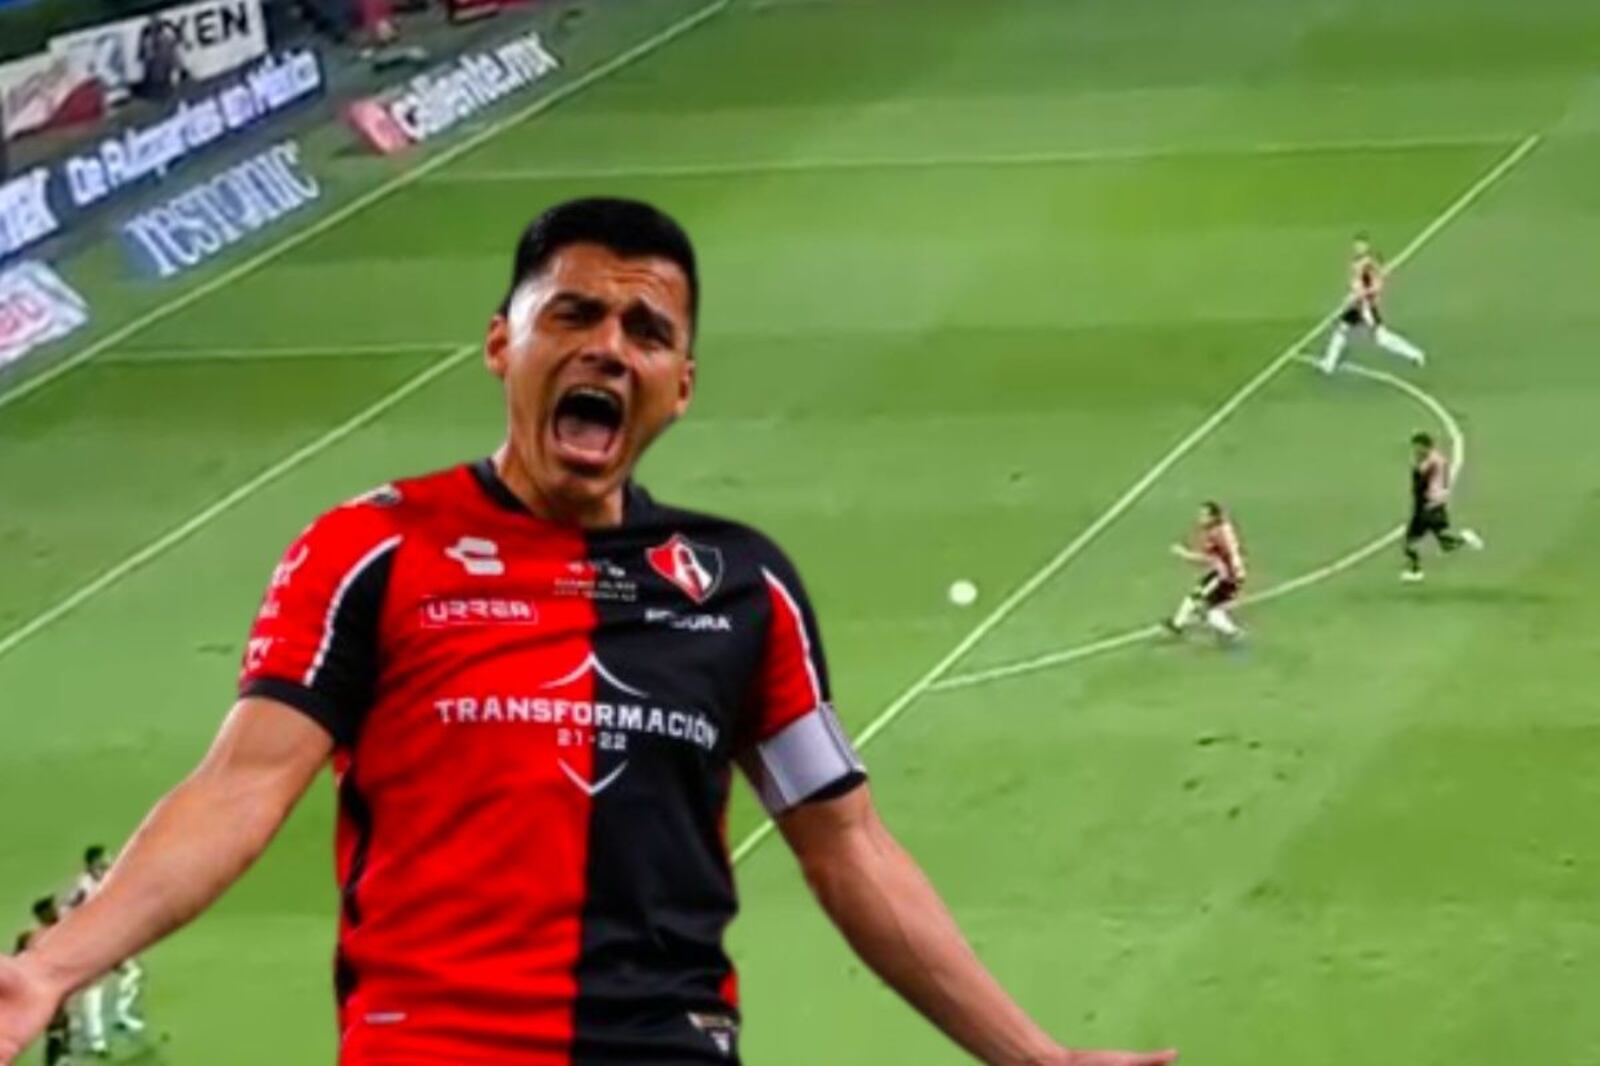 (VIDEO) Atlas empata el marcador ante Chivas con una joya de Aldo Rocha